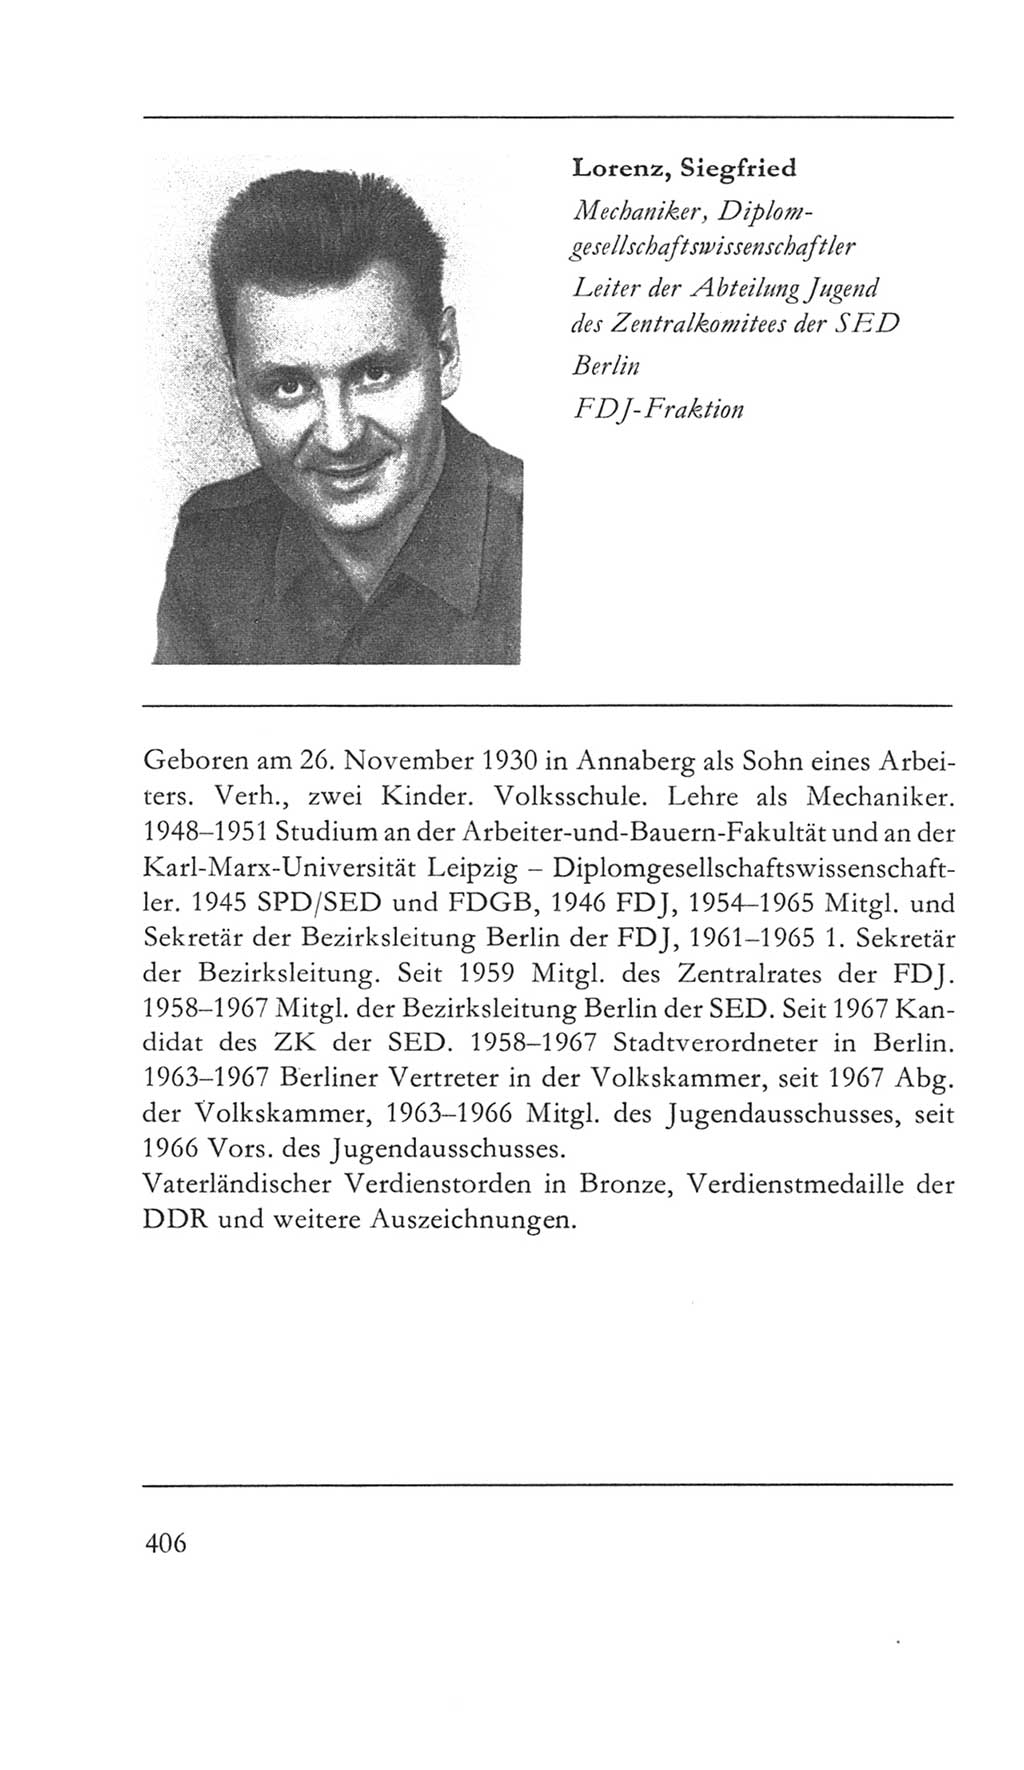 Volkskammer (VK) der Deutschen Demokratischen Republik (DDR) 5. Wahlperiode 1967-1971, Seite 406 (VK. DDR 5. WP. 1967-1971, S. 406)